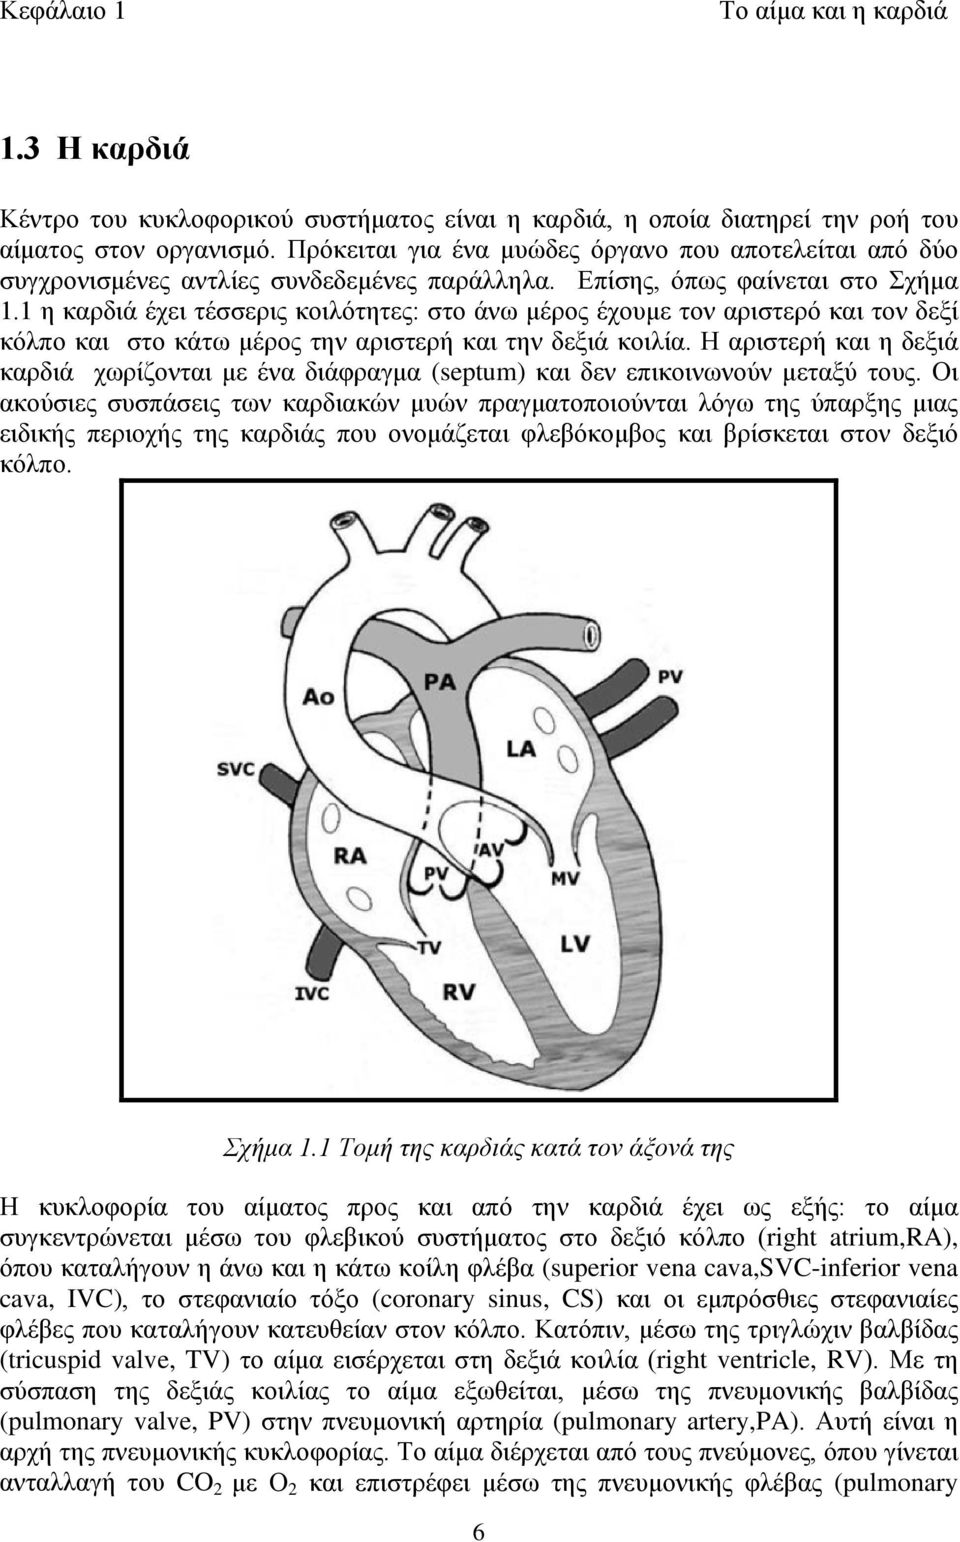 1 η καρδιά έχει τέσσερις κοιλότητες: στο άνω μέρος έχουμε τον αριστερό και τον δεξί κόλπο και στο κάτω μέρος την αριστερή και την δεξιά κοιλία.